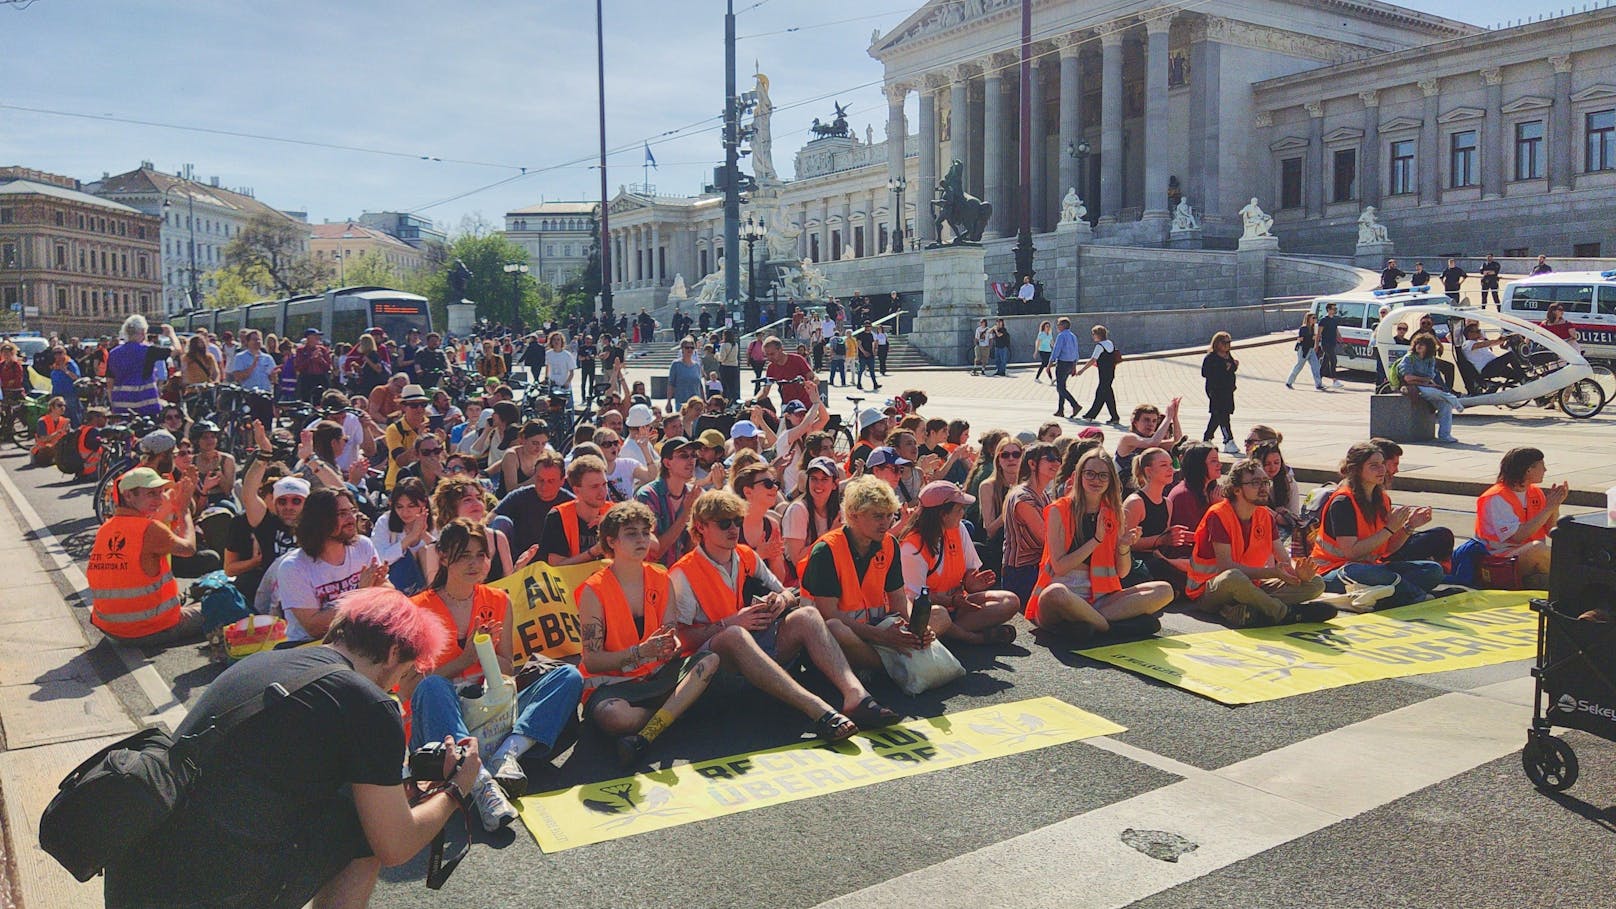 Hirn für Kanzler, Klebestation – Großprotest in Wien